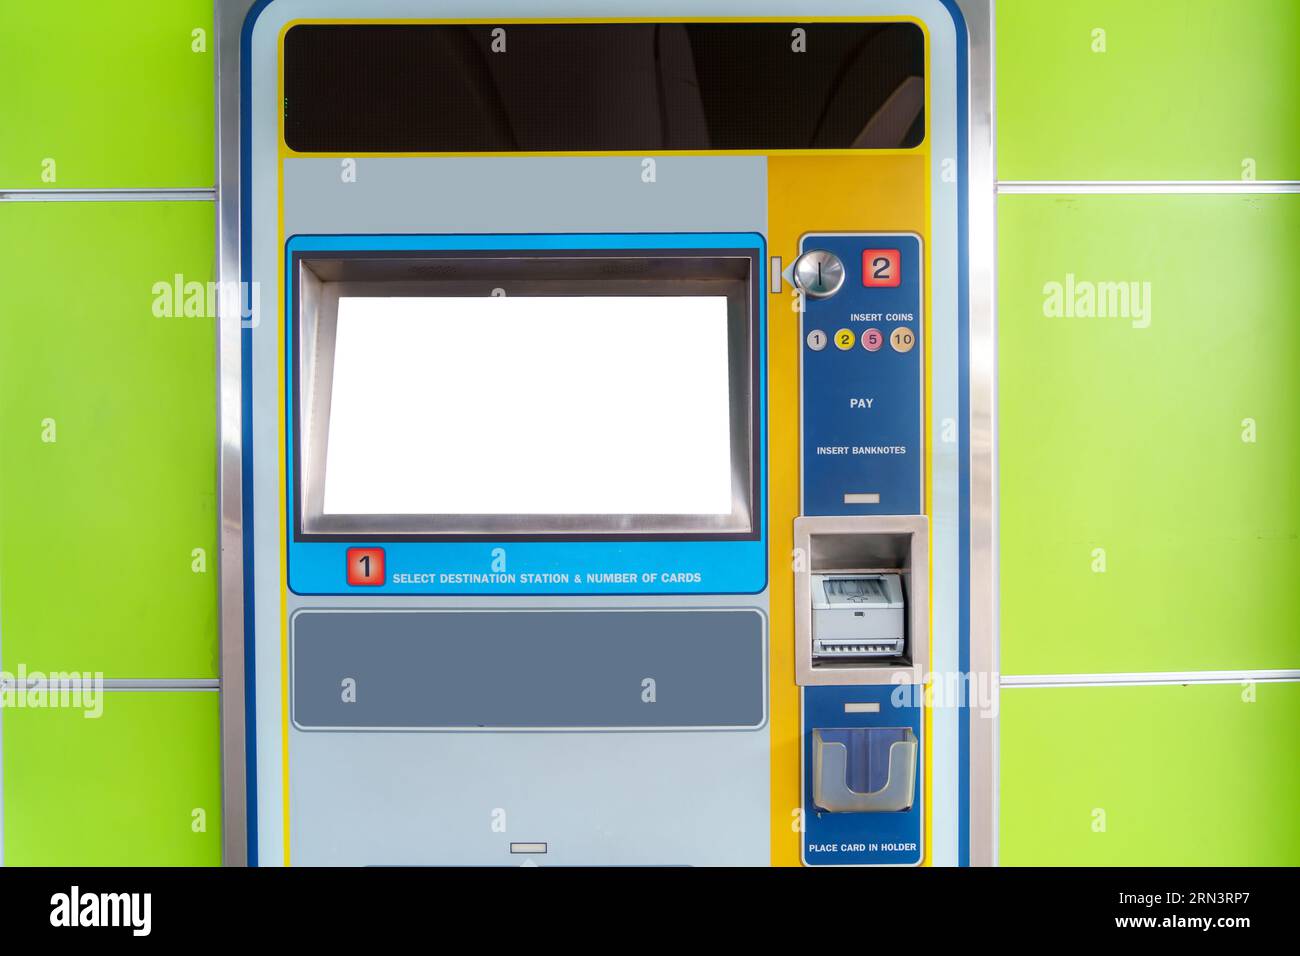 Une maquette blanche d'un distributeur automatique de billets est présentée dans une station de train ou de métro, symbolisant un confort de voyage sans faille. Banque D'Images